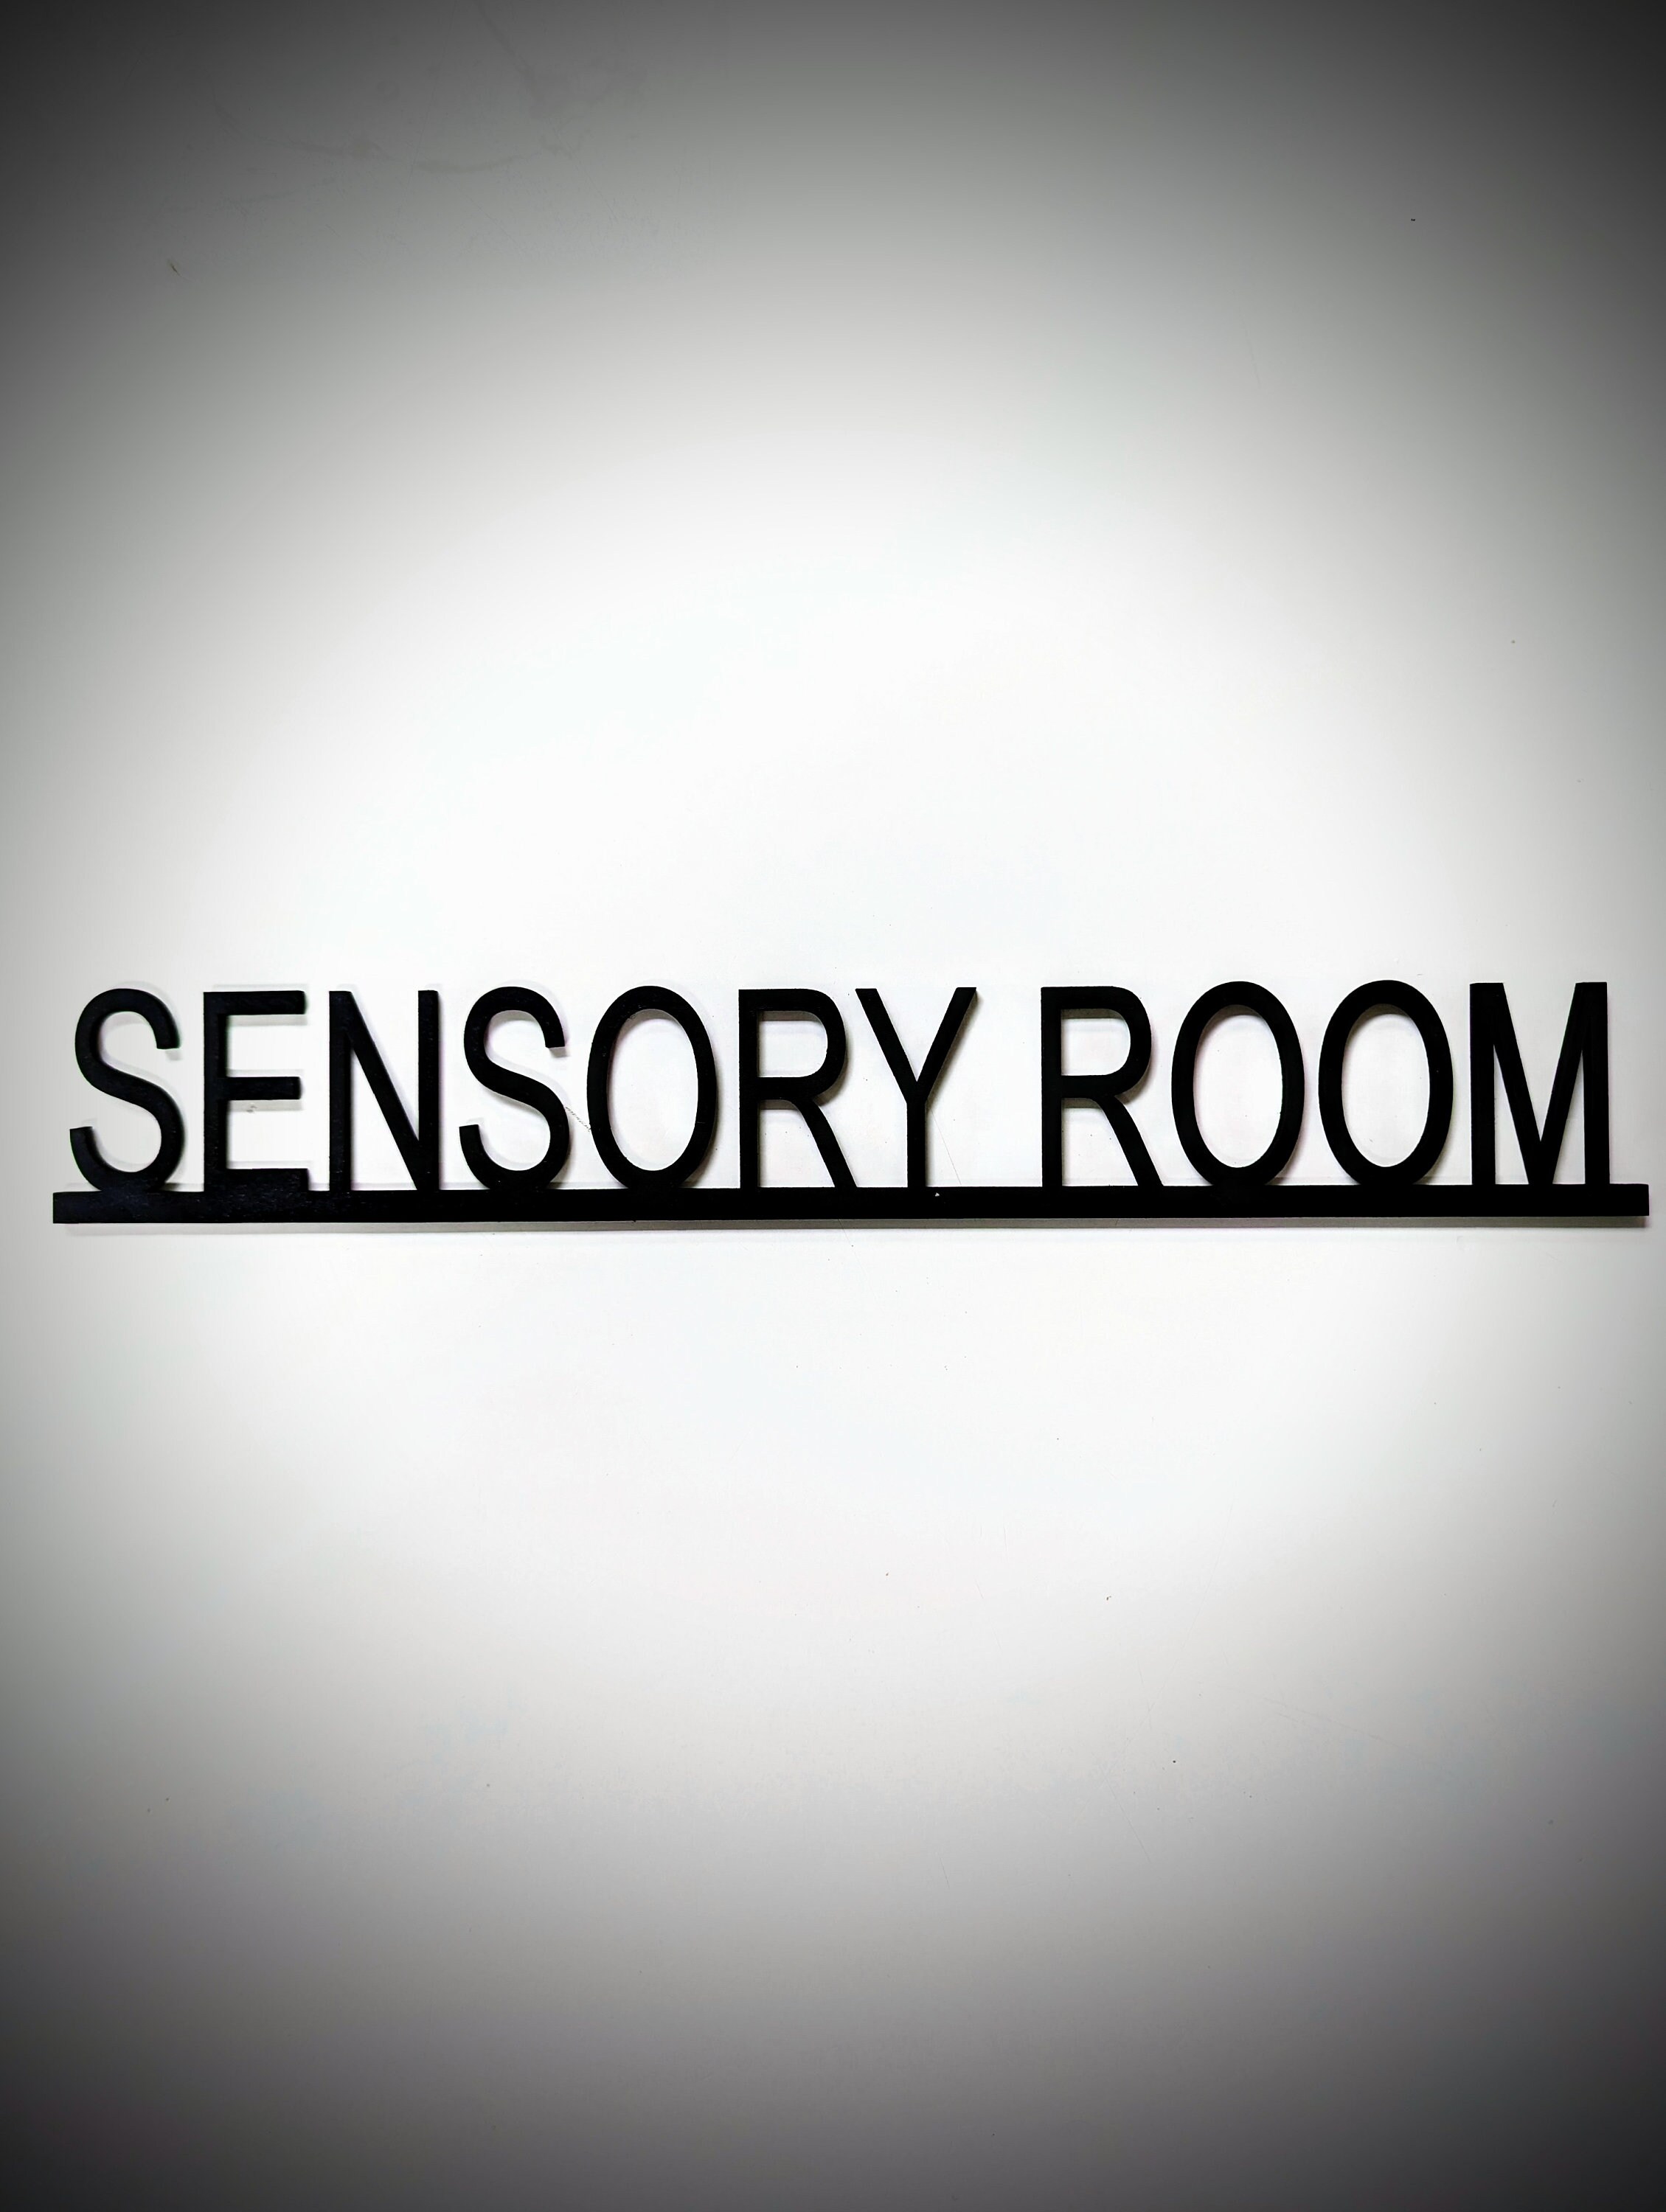 Sensory Room Equipment Clip Art